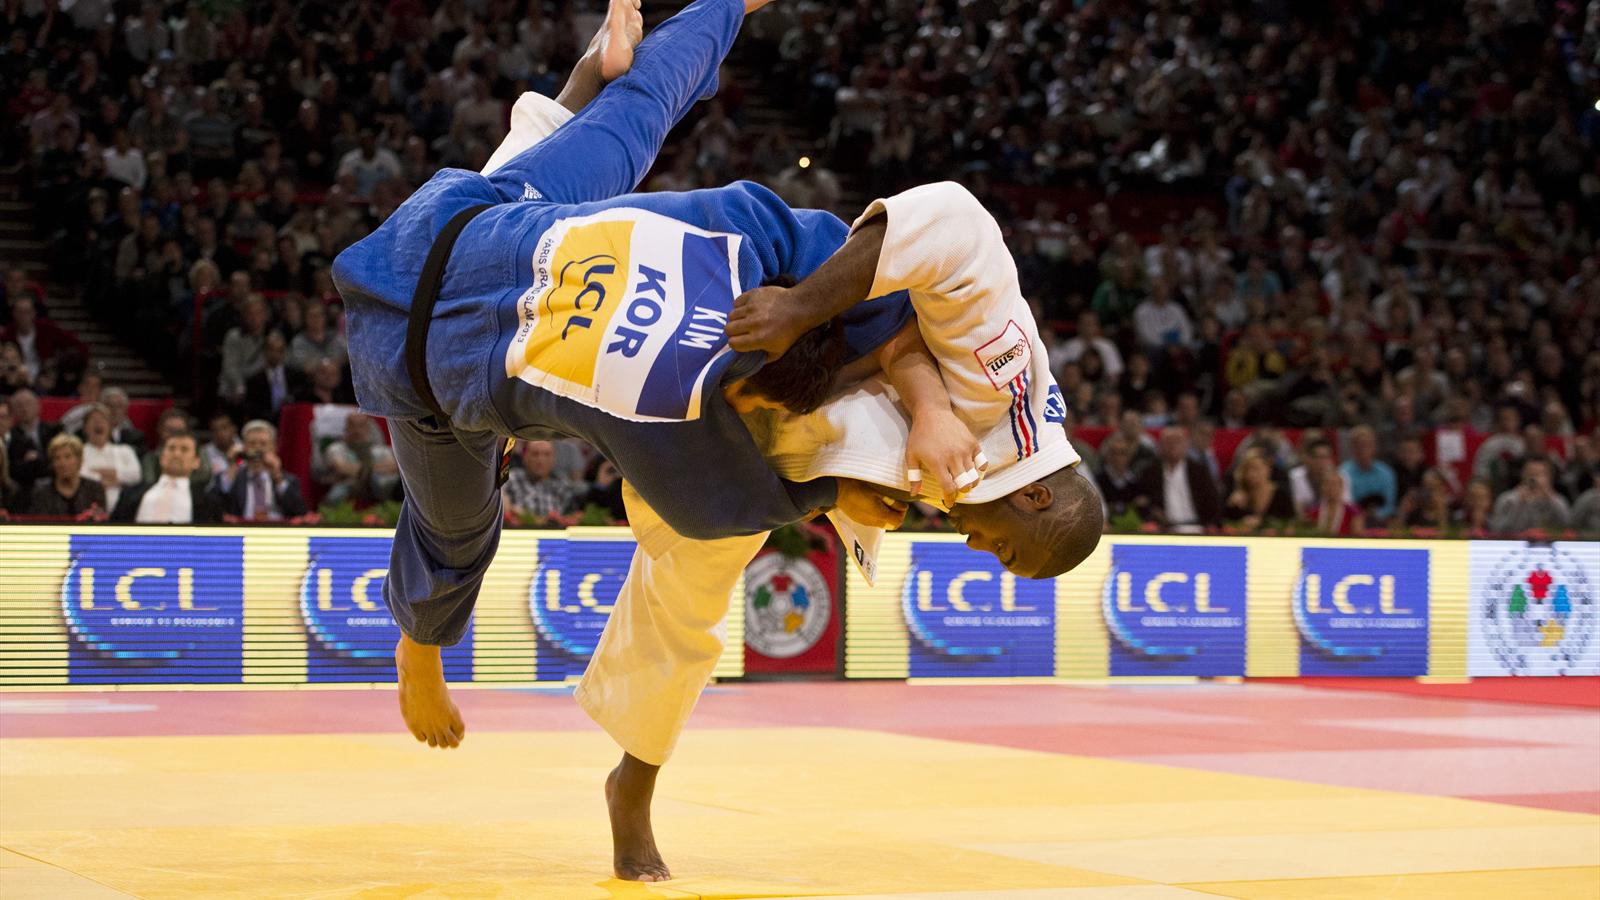 Watch: 20 Best Throws of Judo Superstars, Riner, Iliadis….